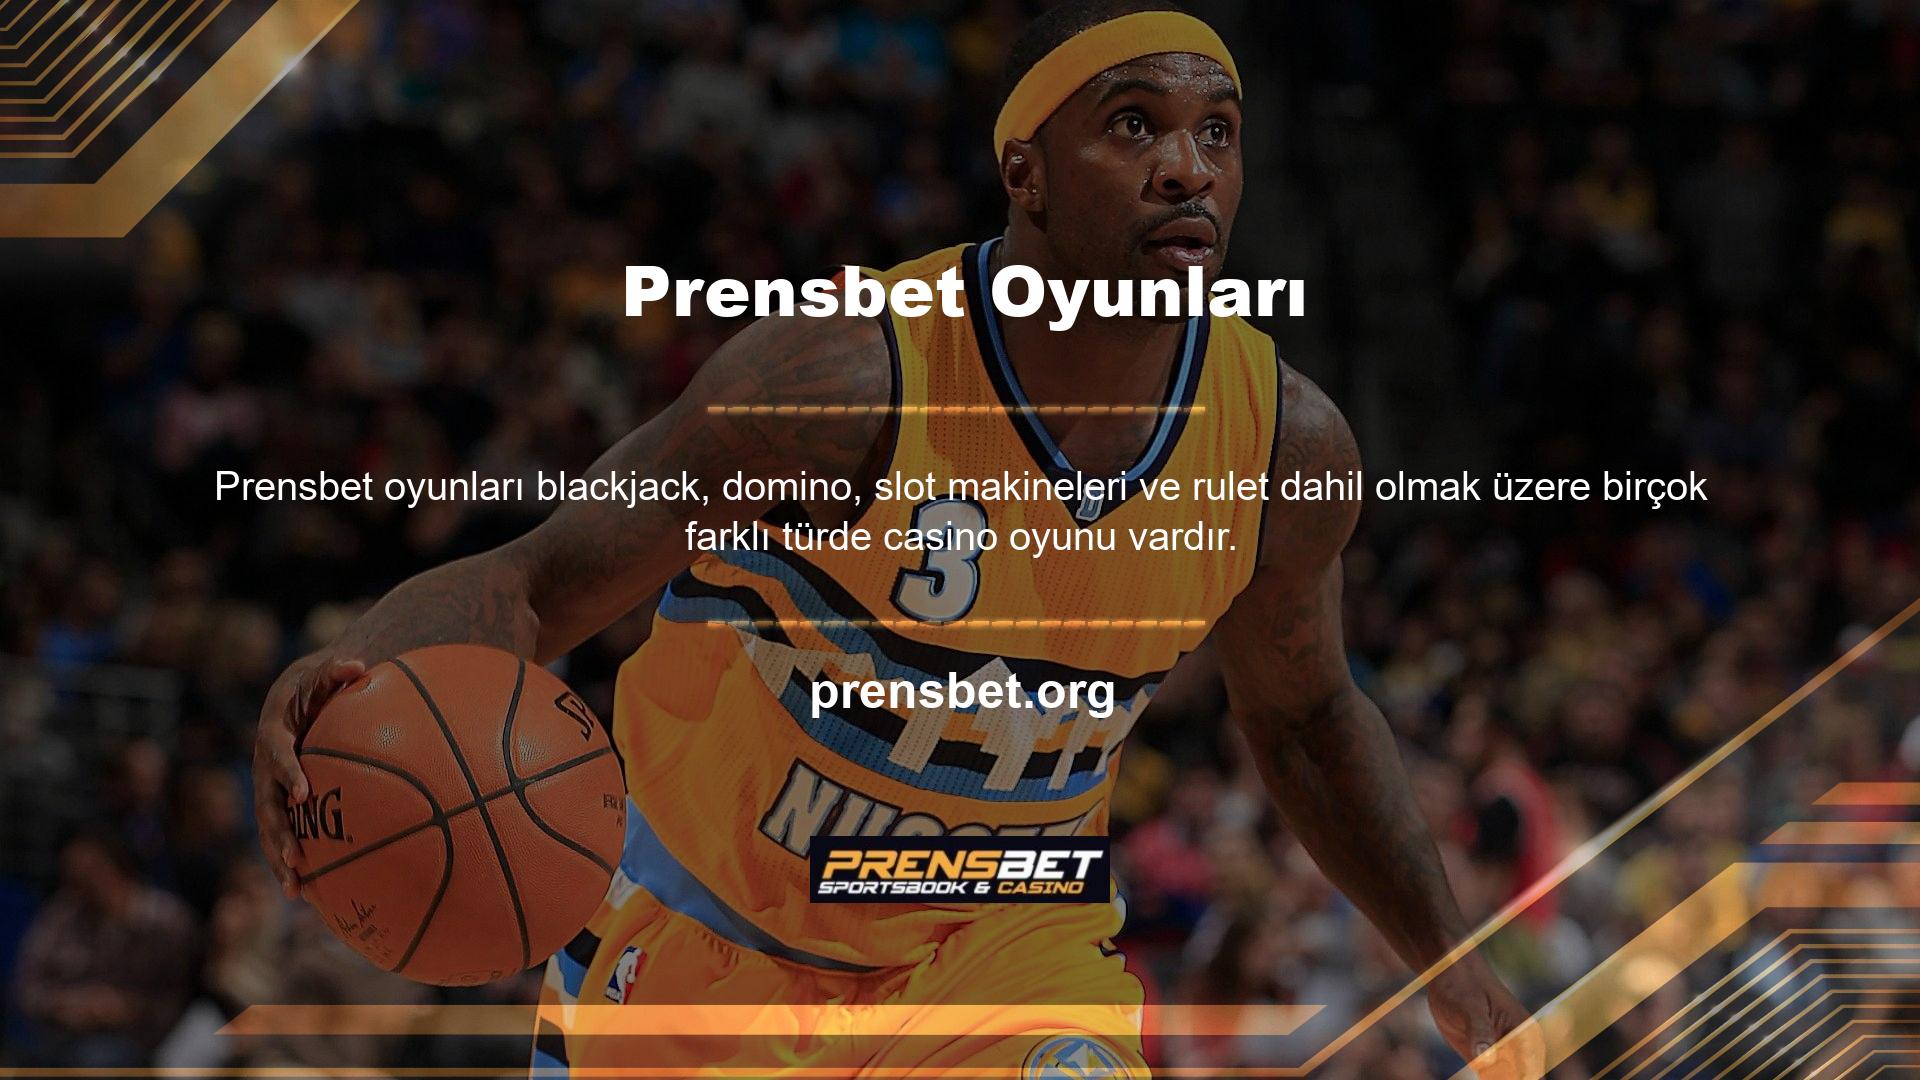 Prensbet, çok çeşitli casino oyunları sunan ünlü bir web sitesidir